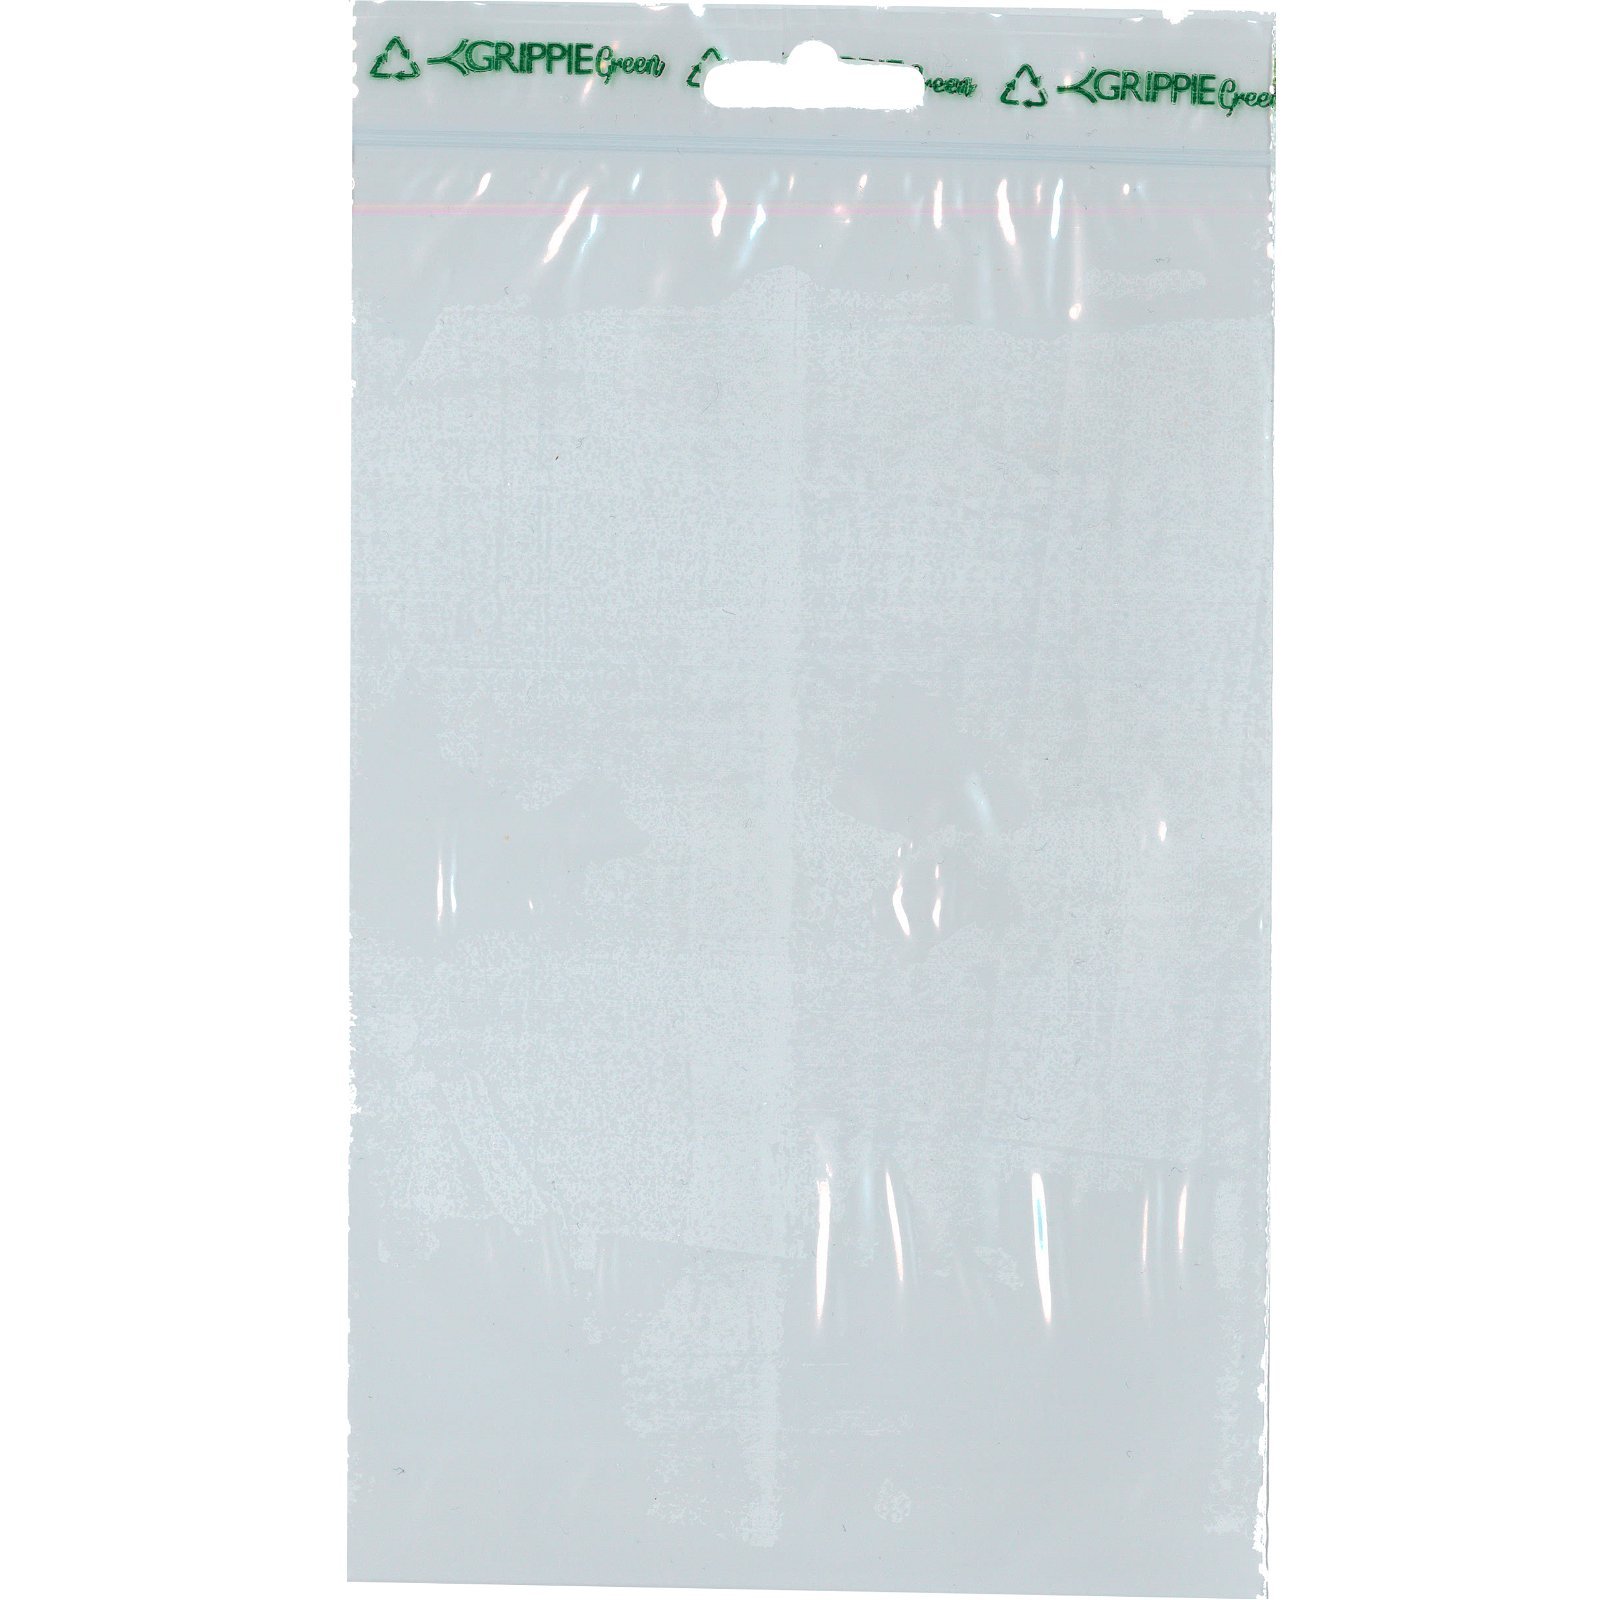 Grippie Green lynlåsposer Bioplast B120 mm x L 50 mic 1.000 stk